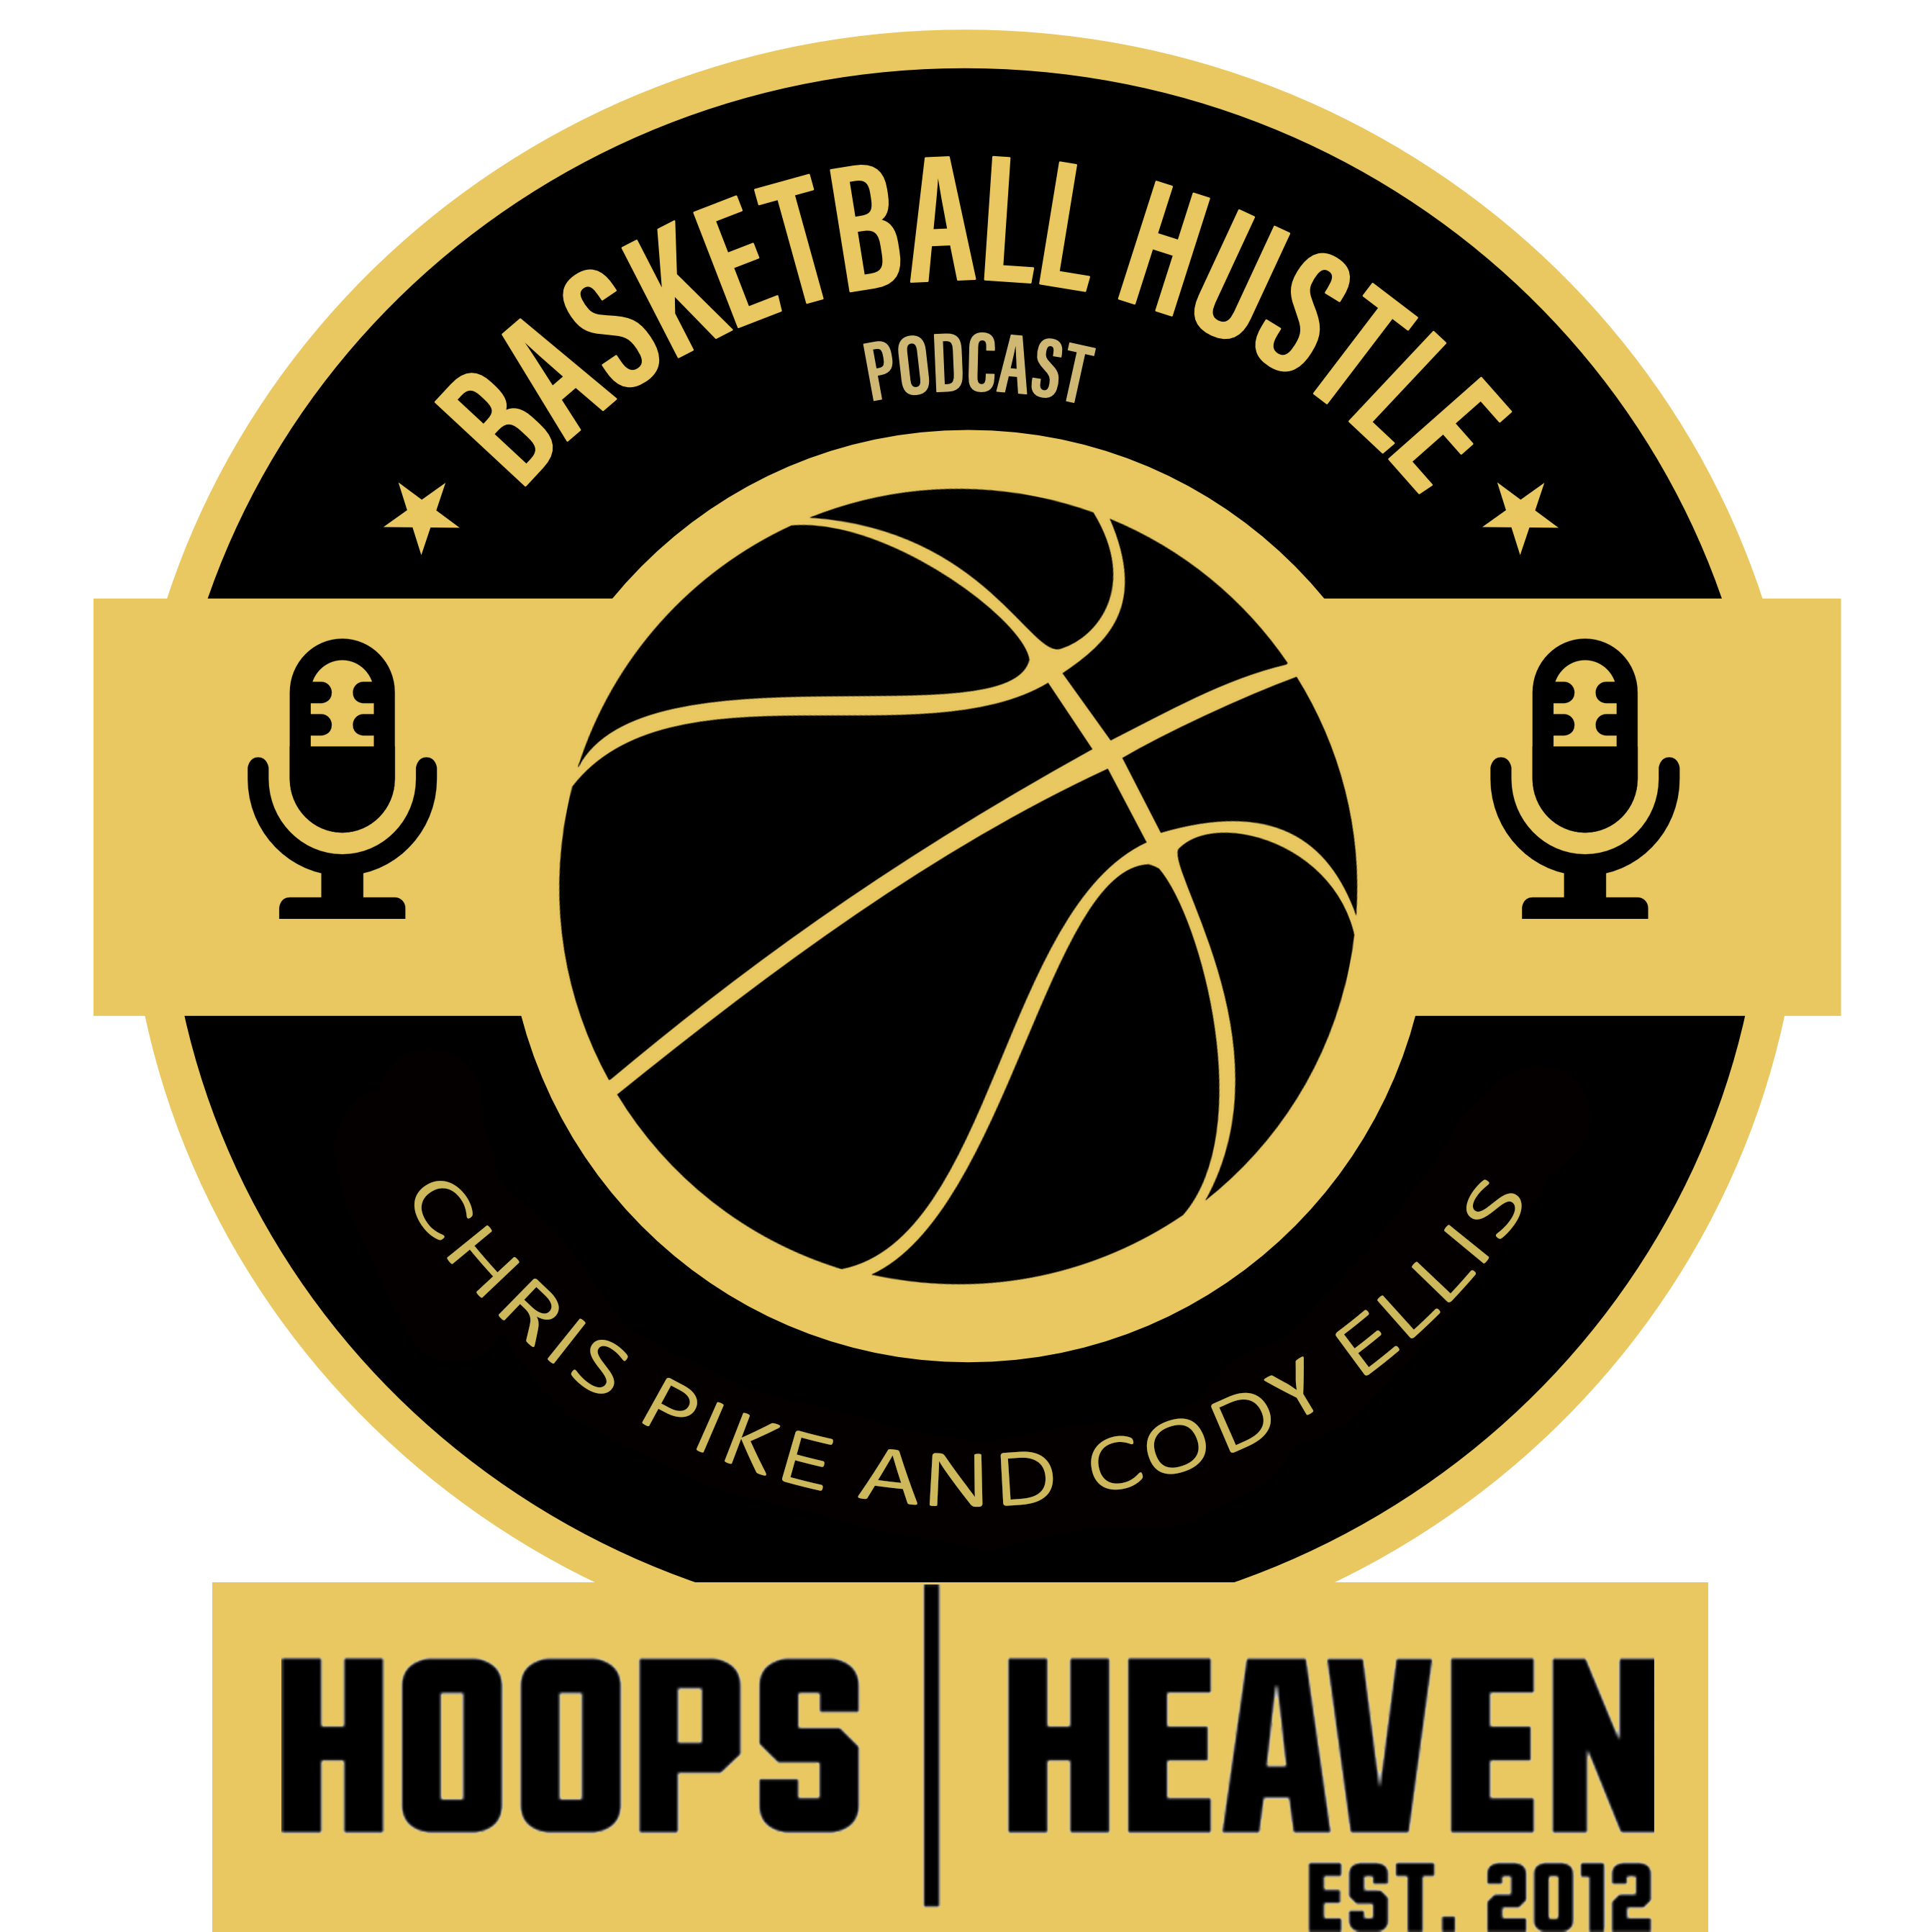 Hoops Heaven‘s Basketball Hustle